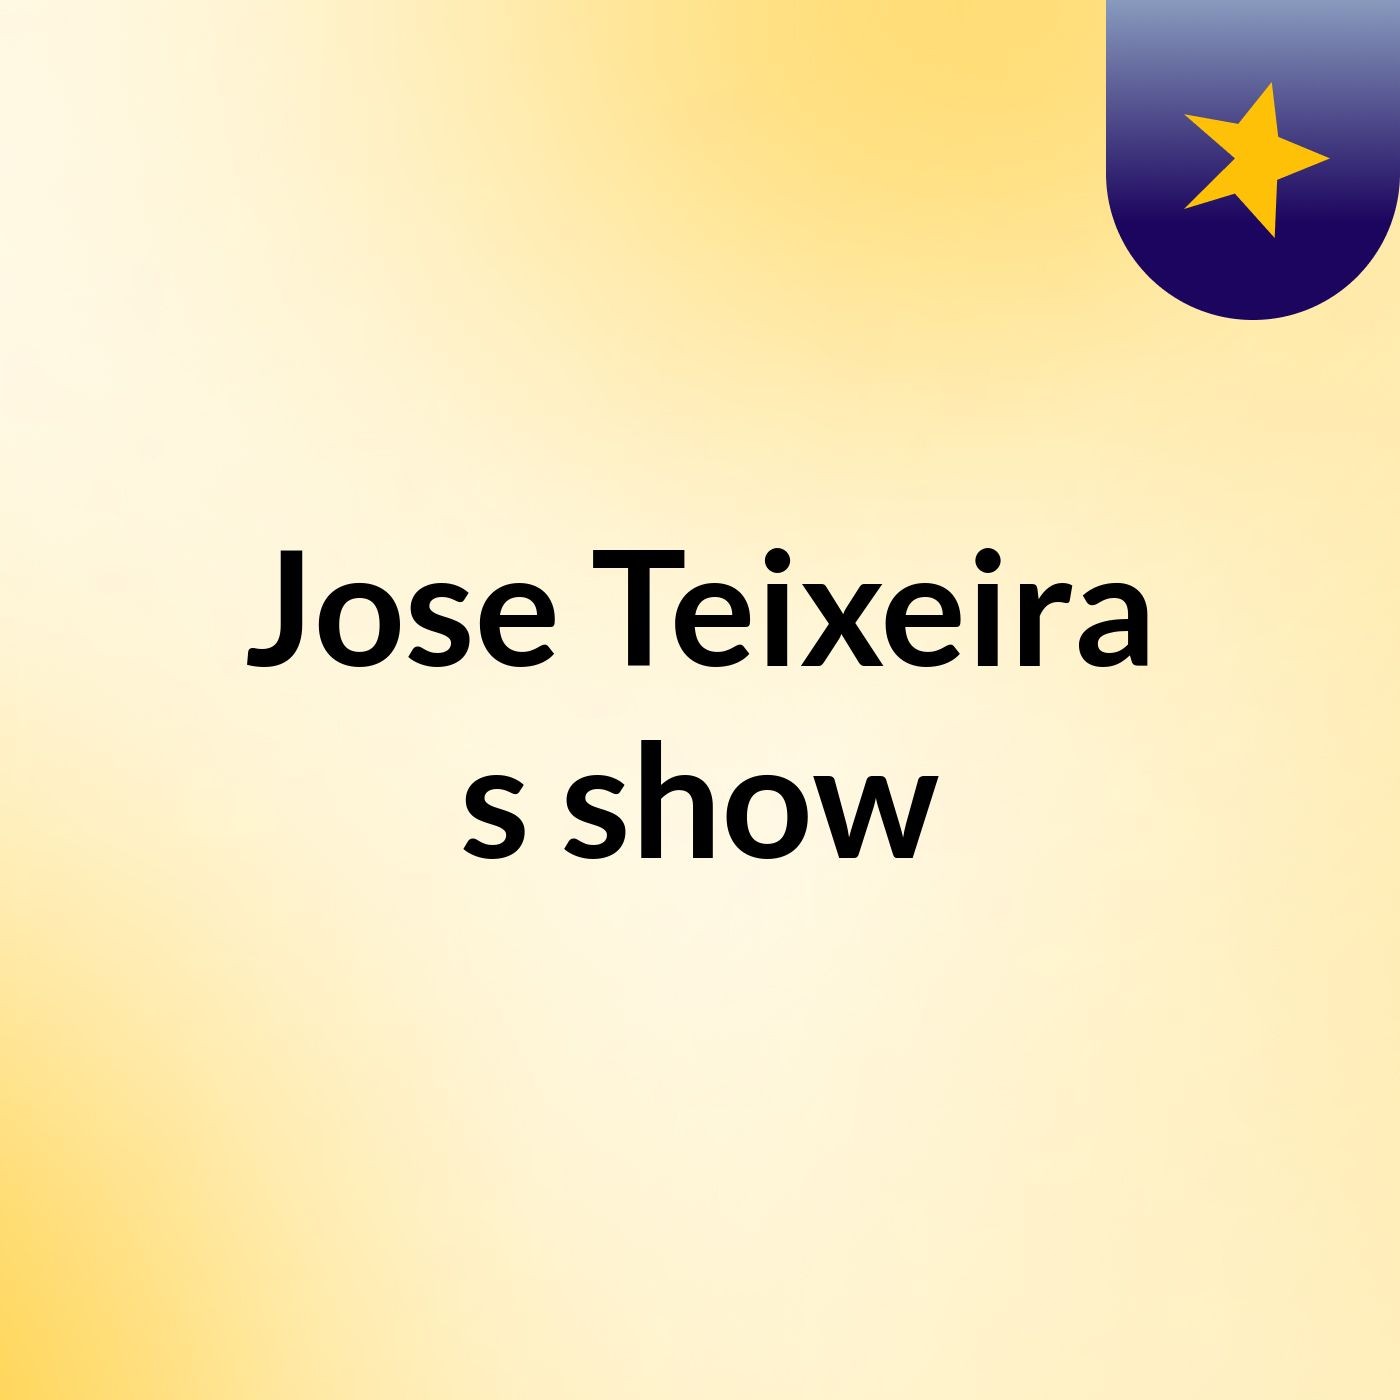 Jose Teixeira's show